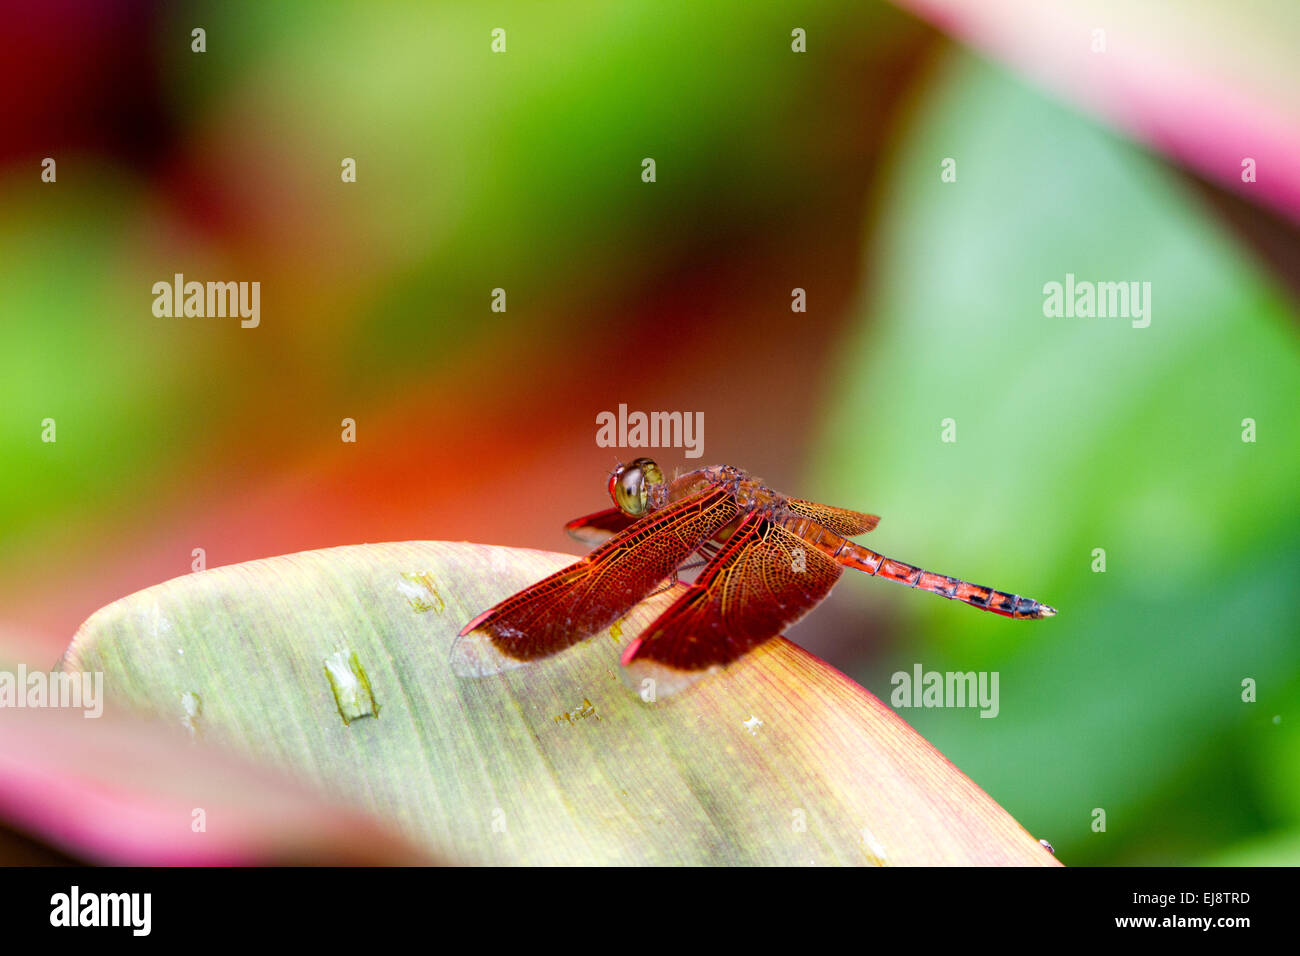 Tropic al dragonfly (Neurothermis terminata) Stock Photo